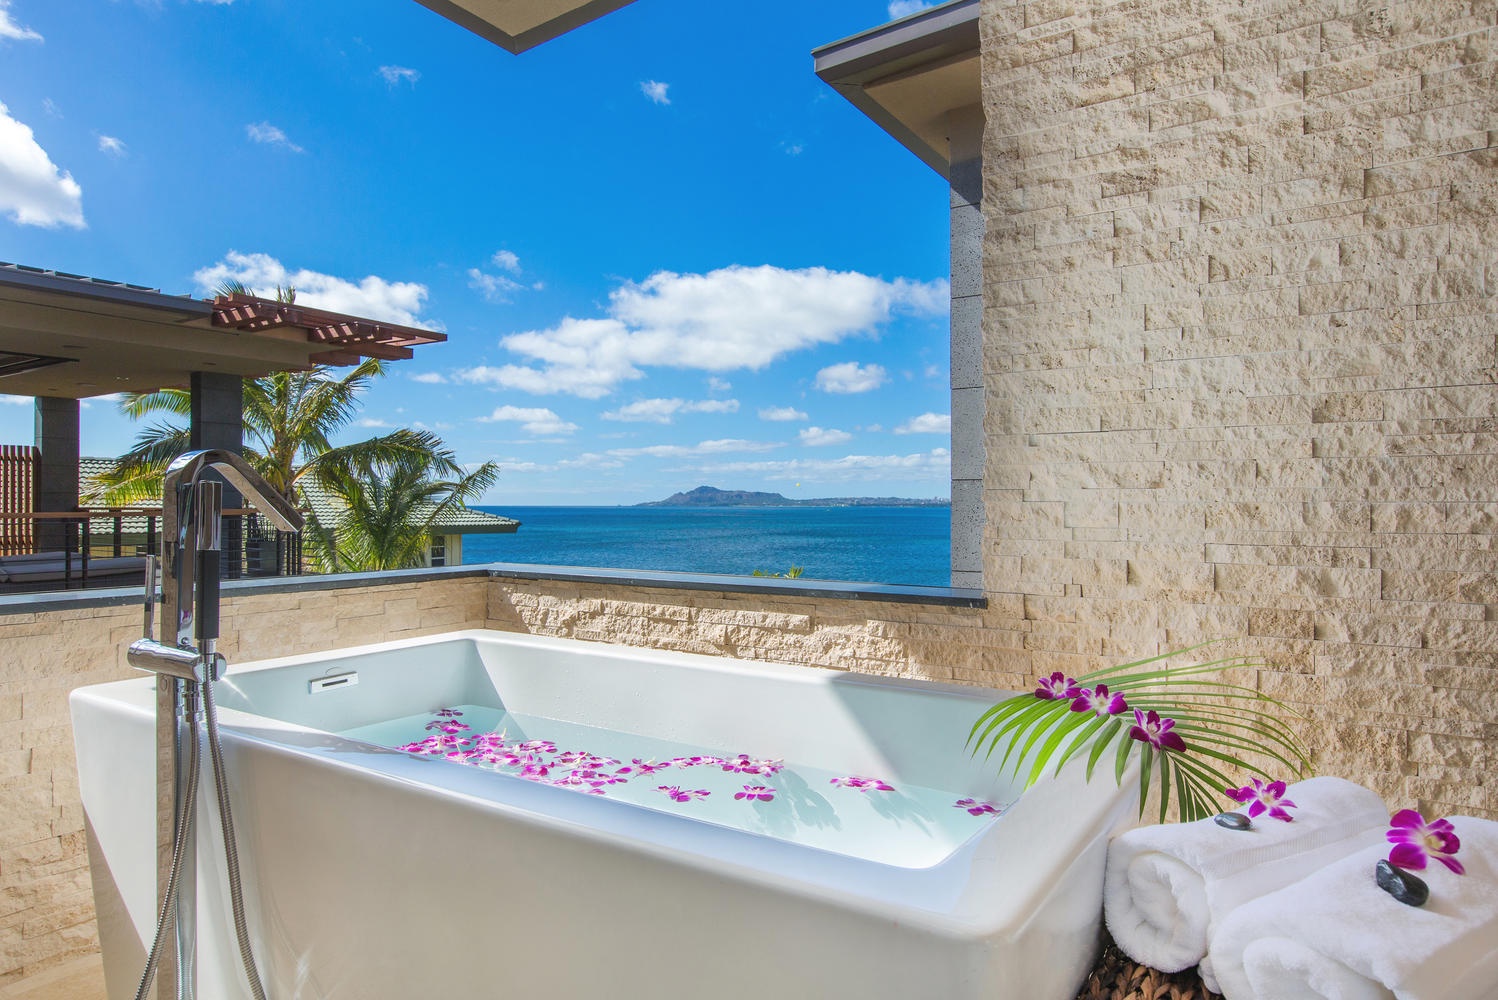 Honolulu Vacation Rentals, Ocean House 4 Bedroom - Primary bathroom tub